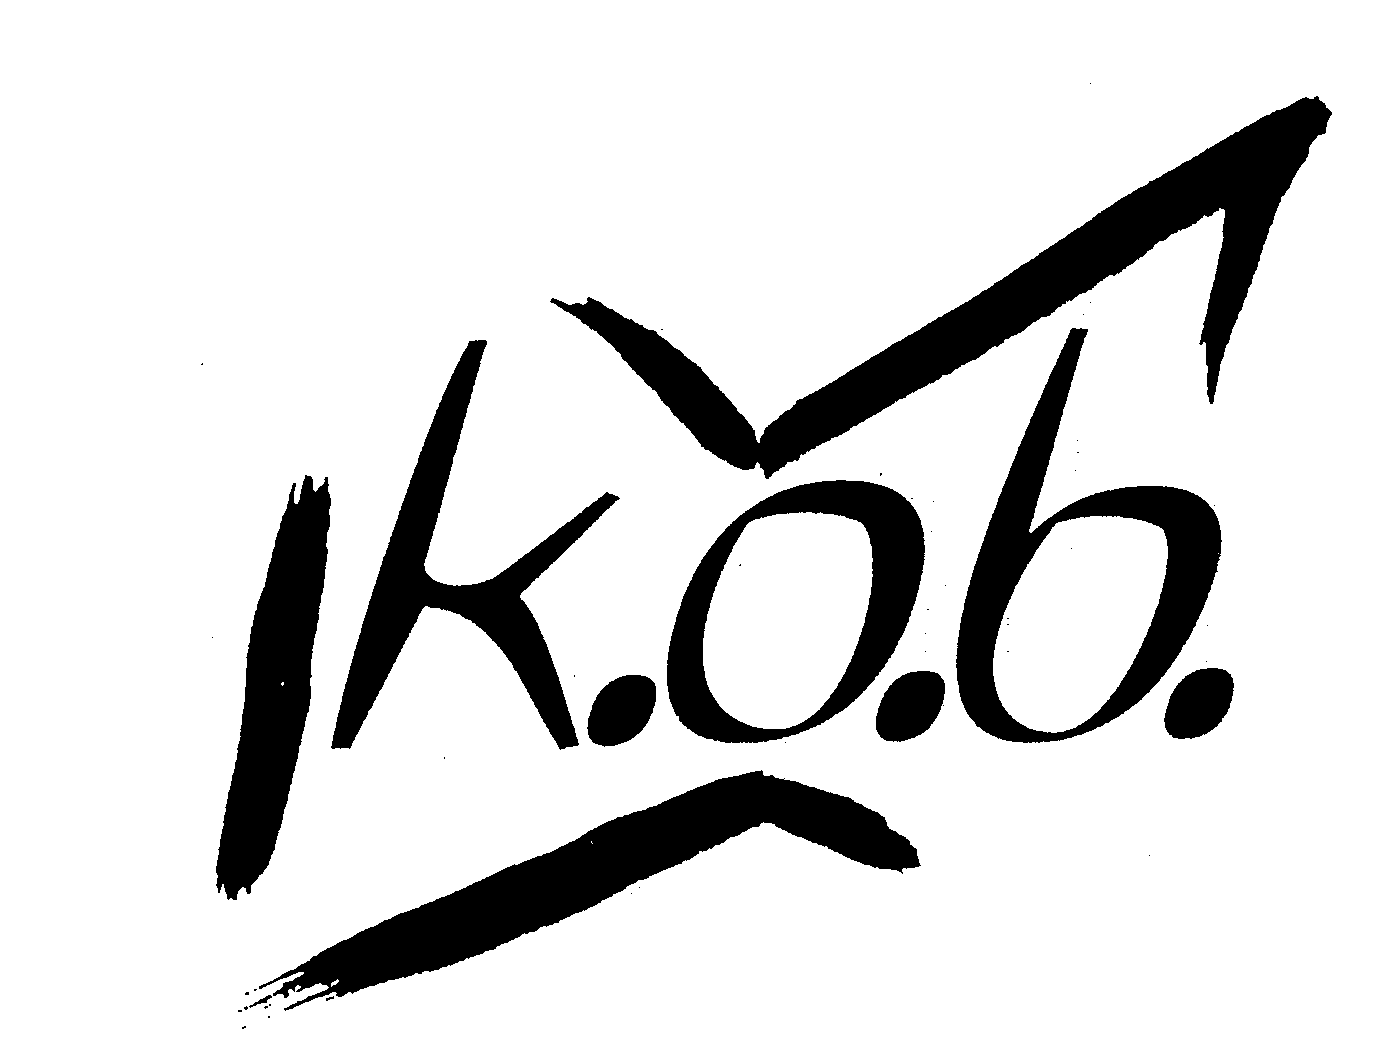  K.O.B.